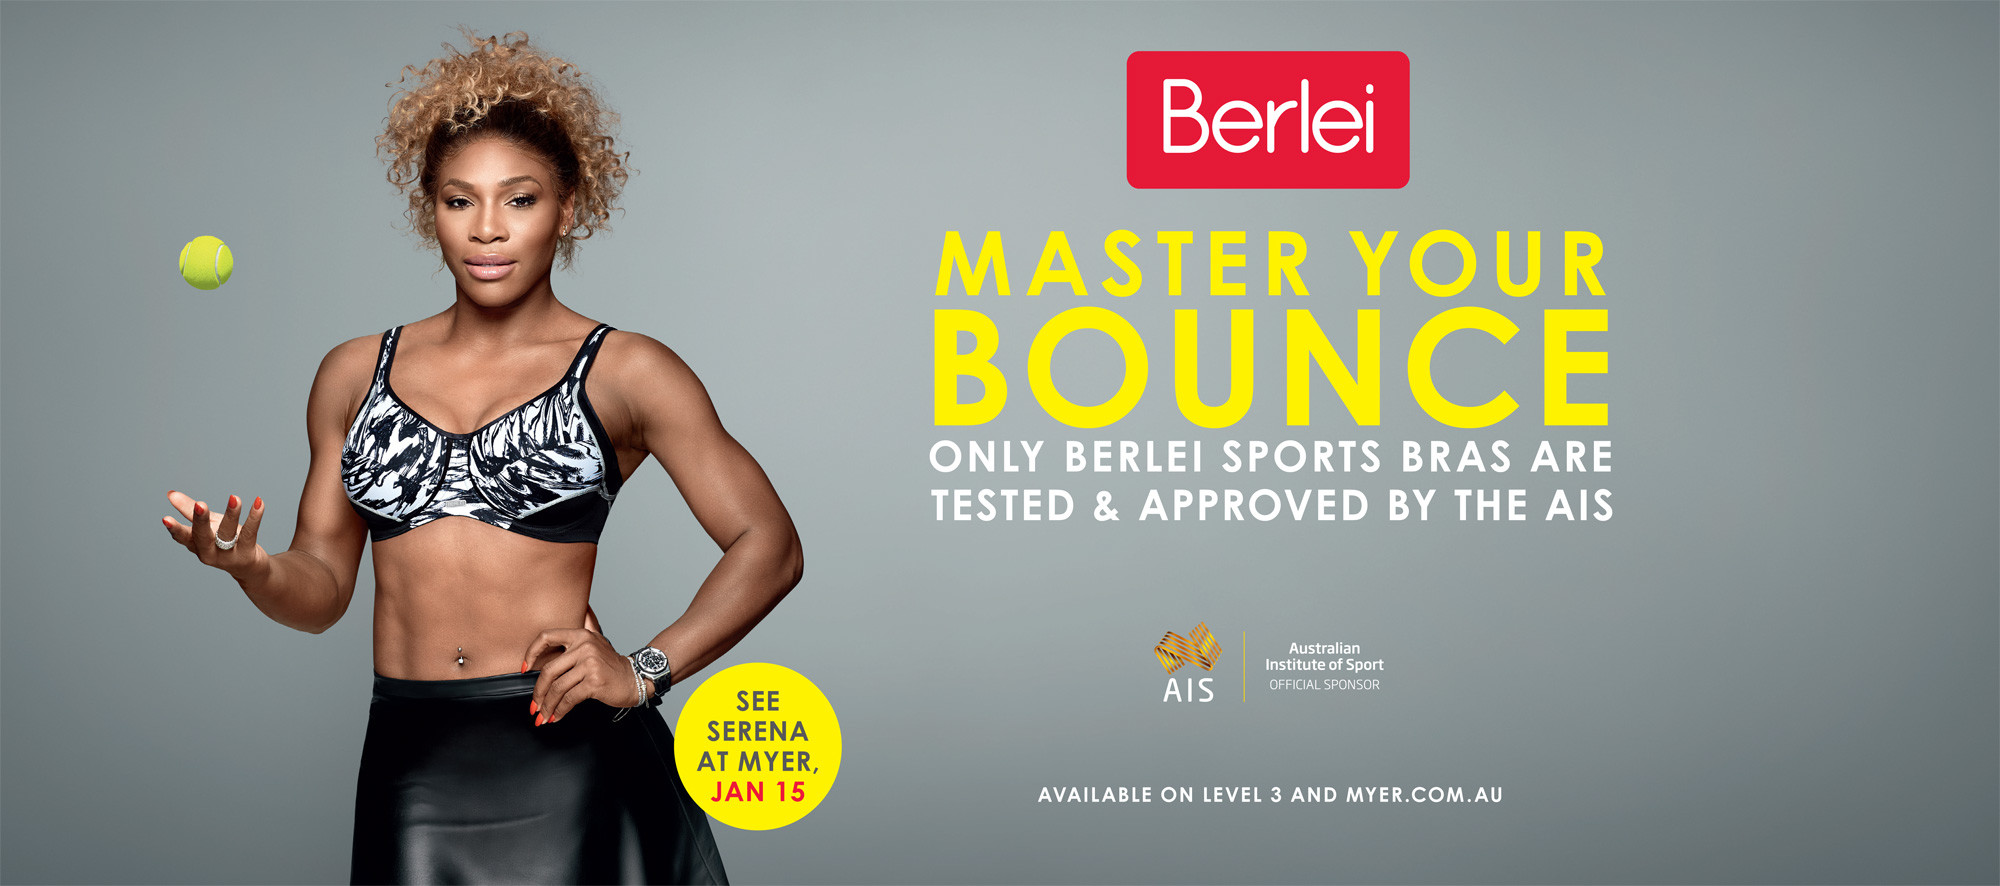 Berlei (Serena Williams)